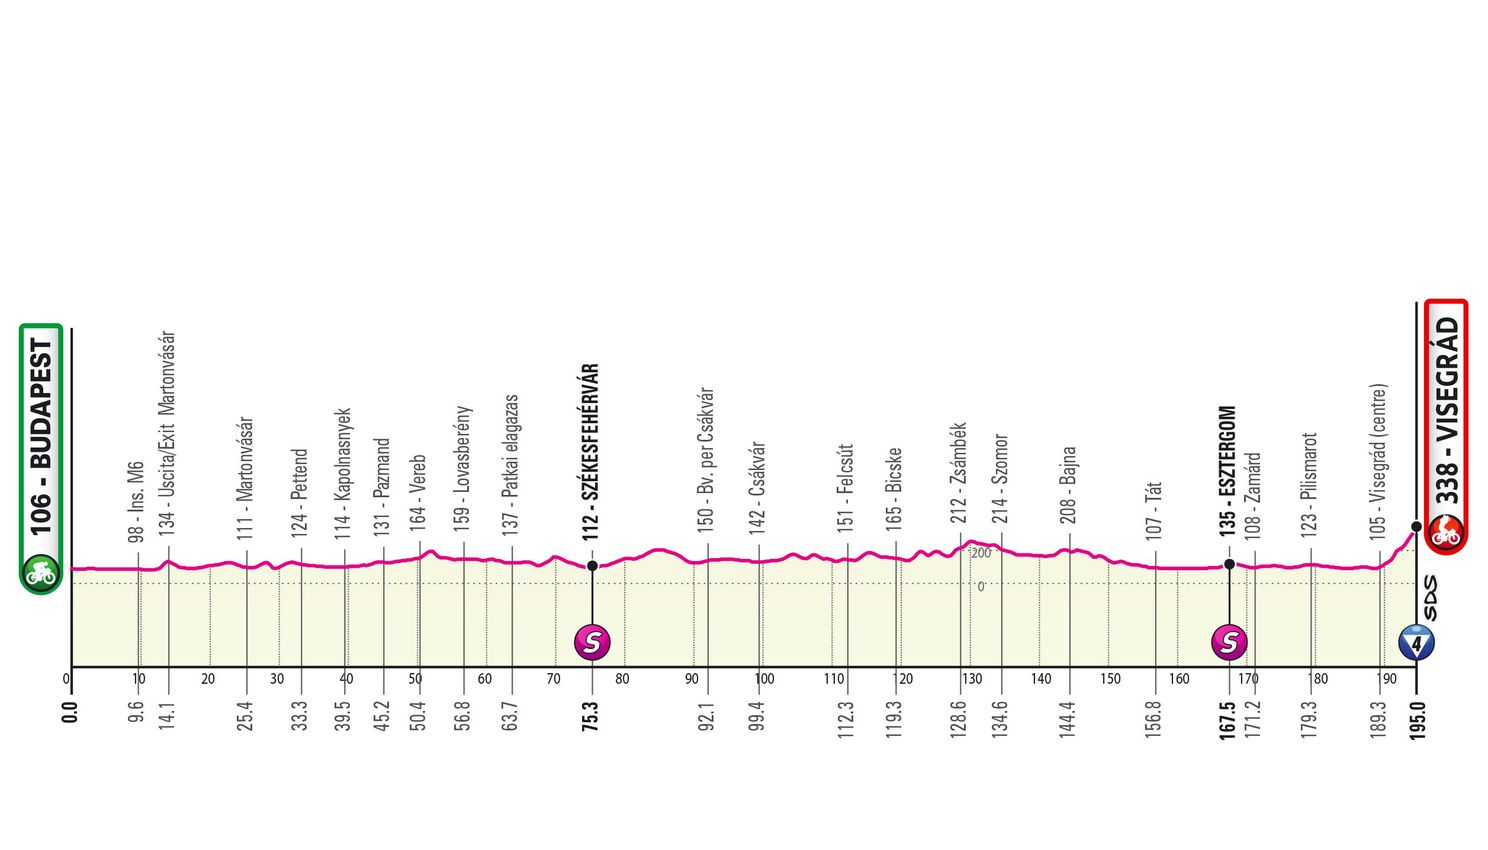 Favoriete etappe 1 Giro d'Italia 2022 |  Roze loper voor Van der Poel, of toch de sprinters?